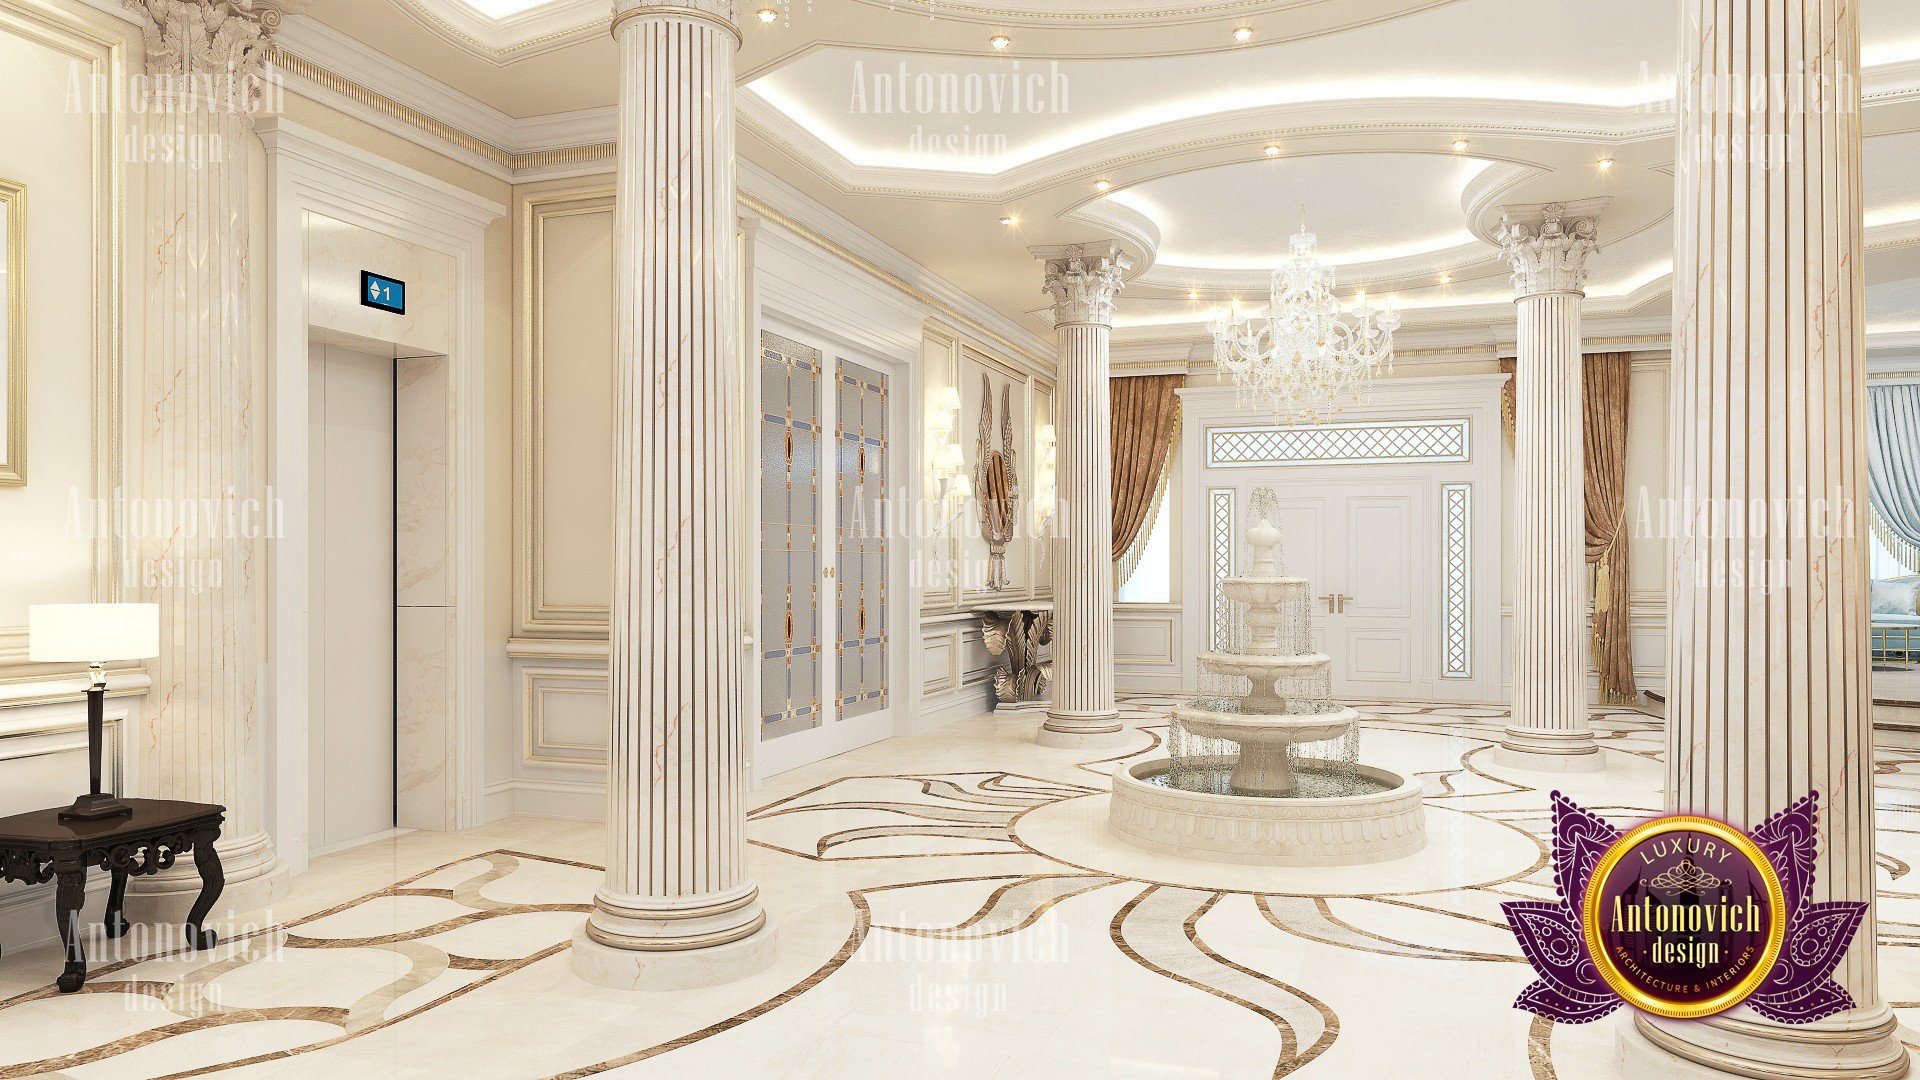 Luxury Carved Marble floors